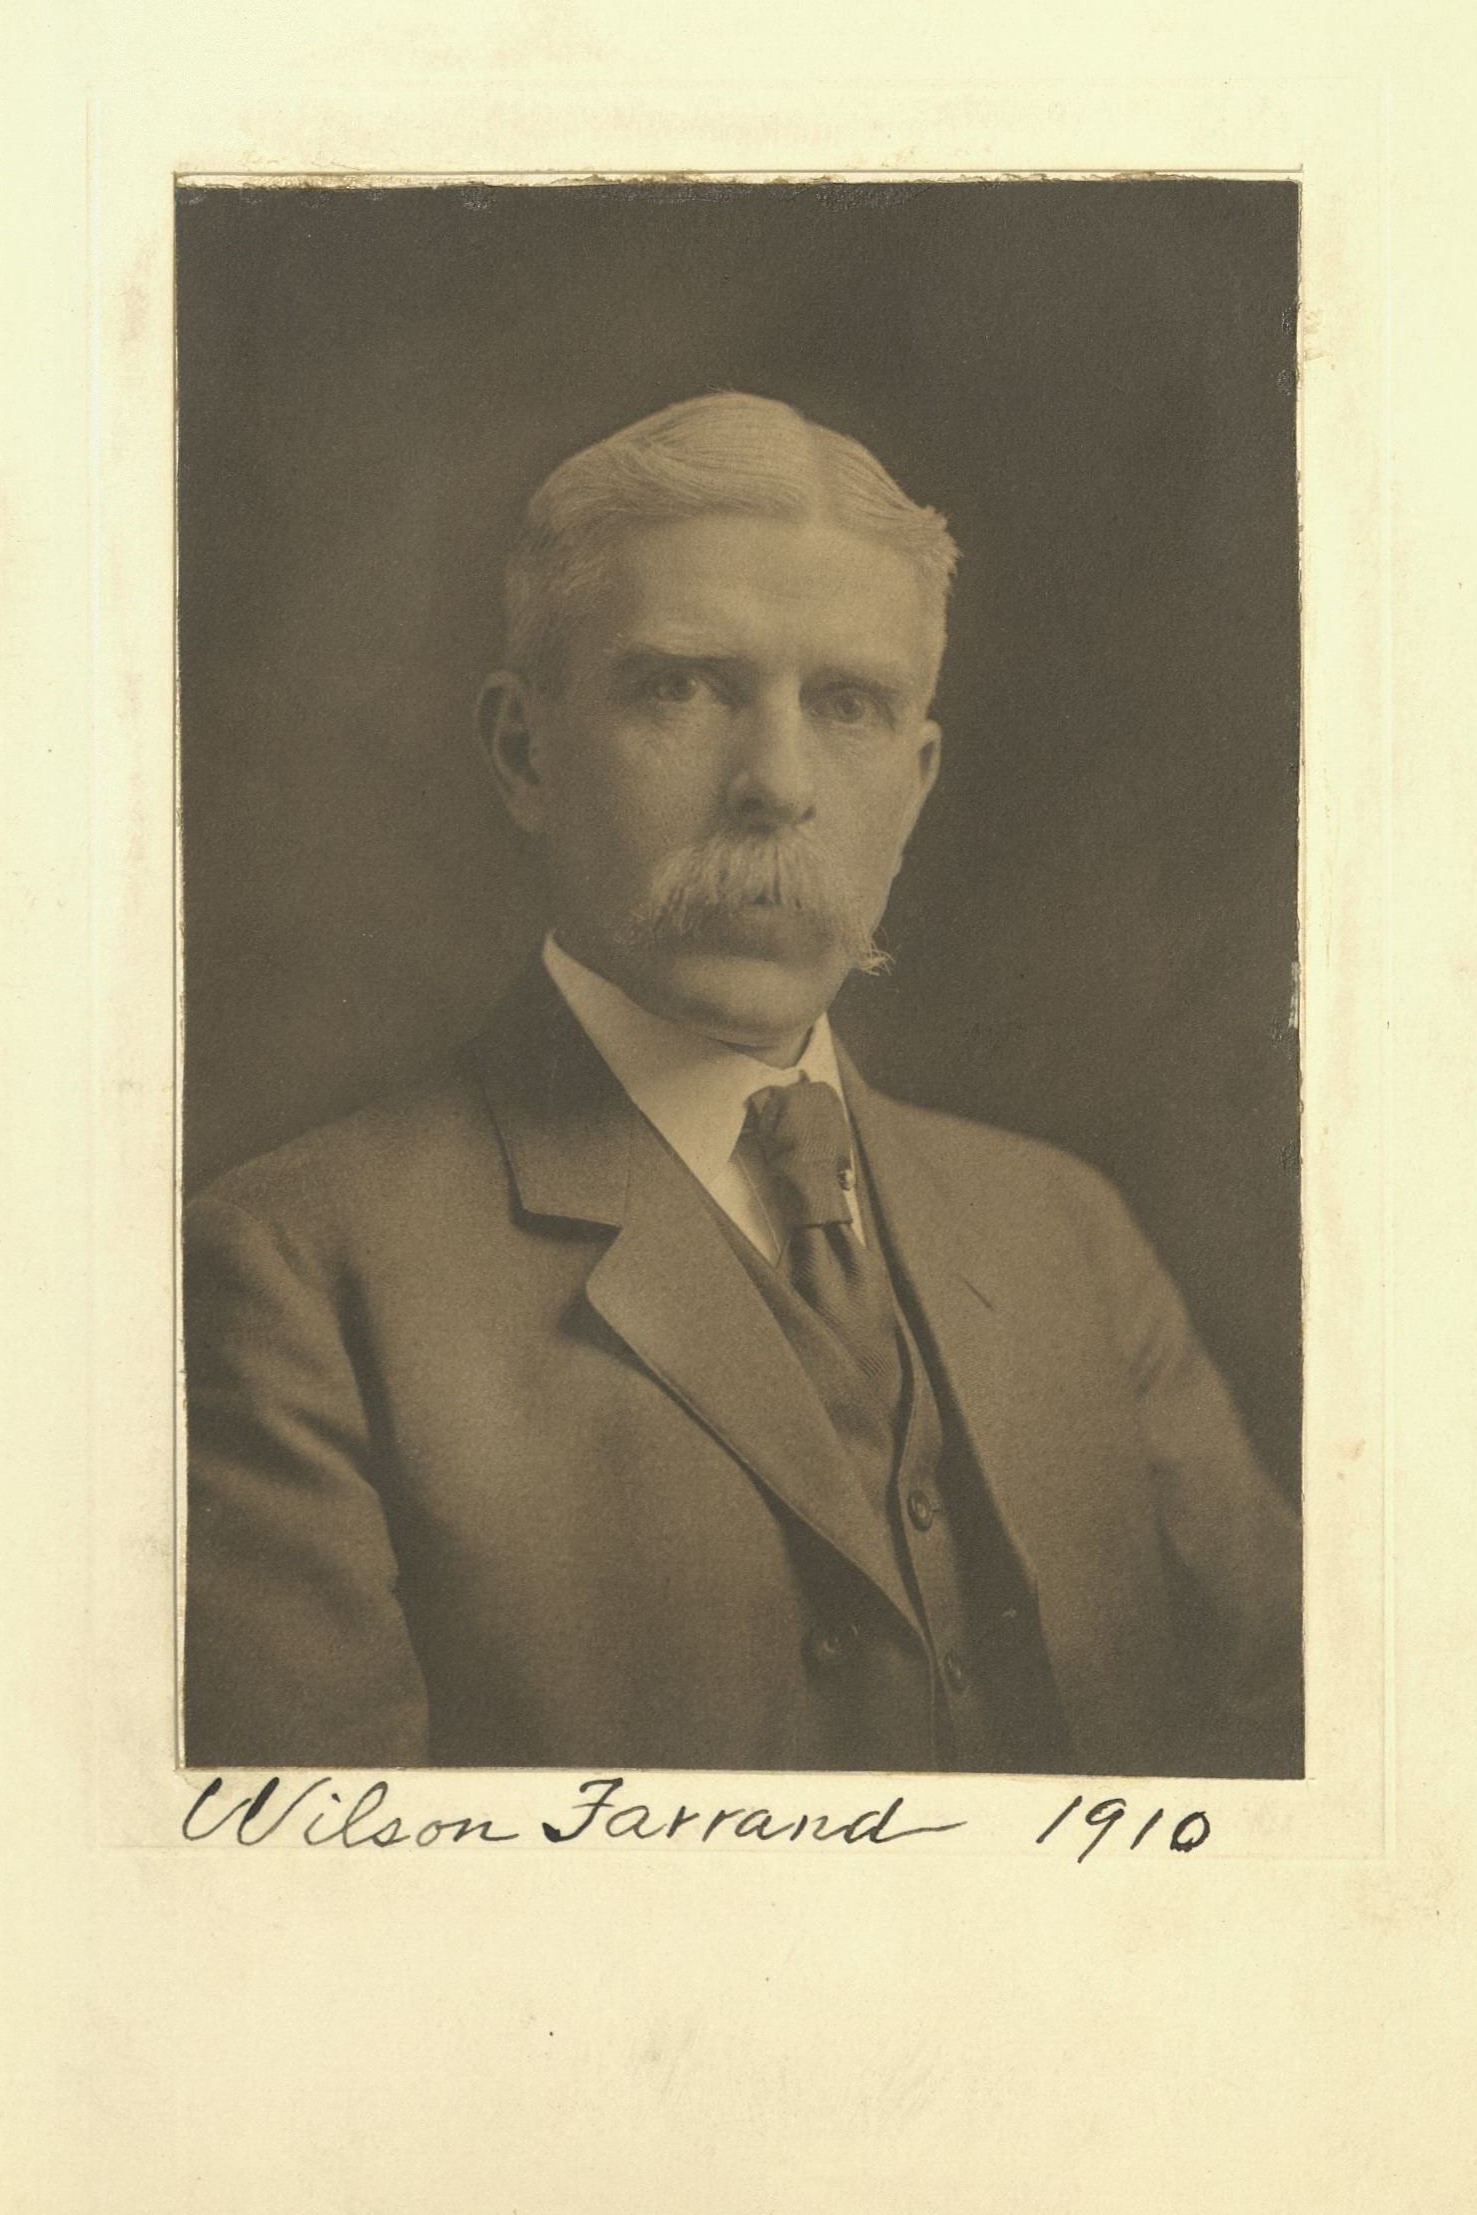 Member portrait of Wilson Farrand